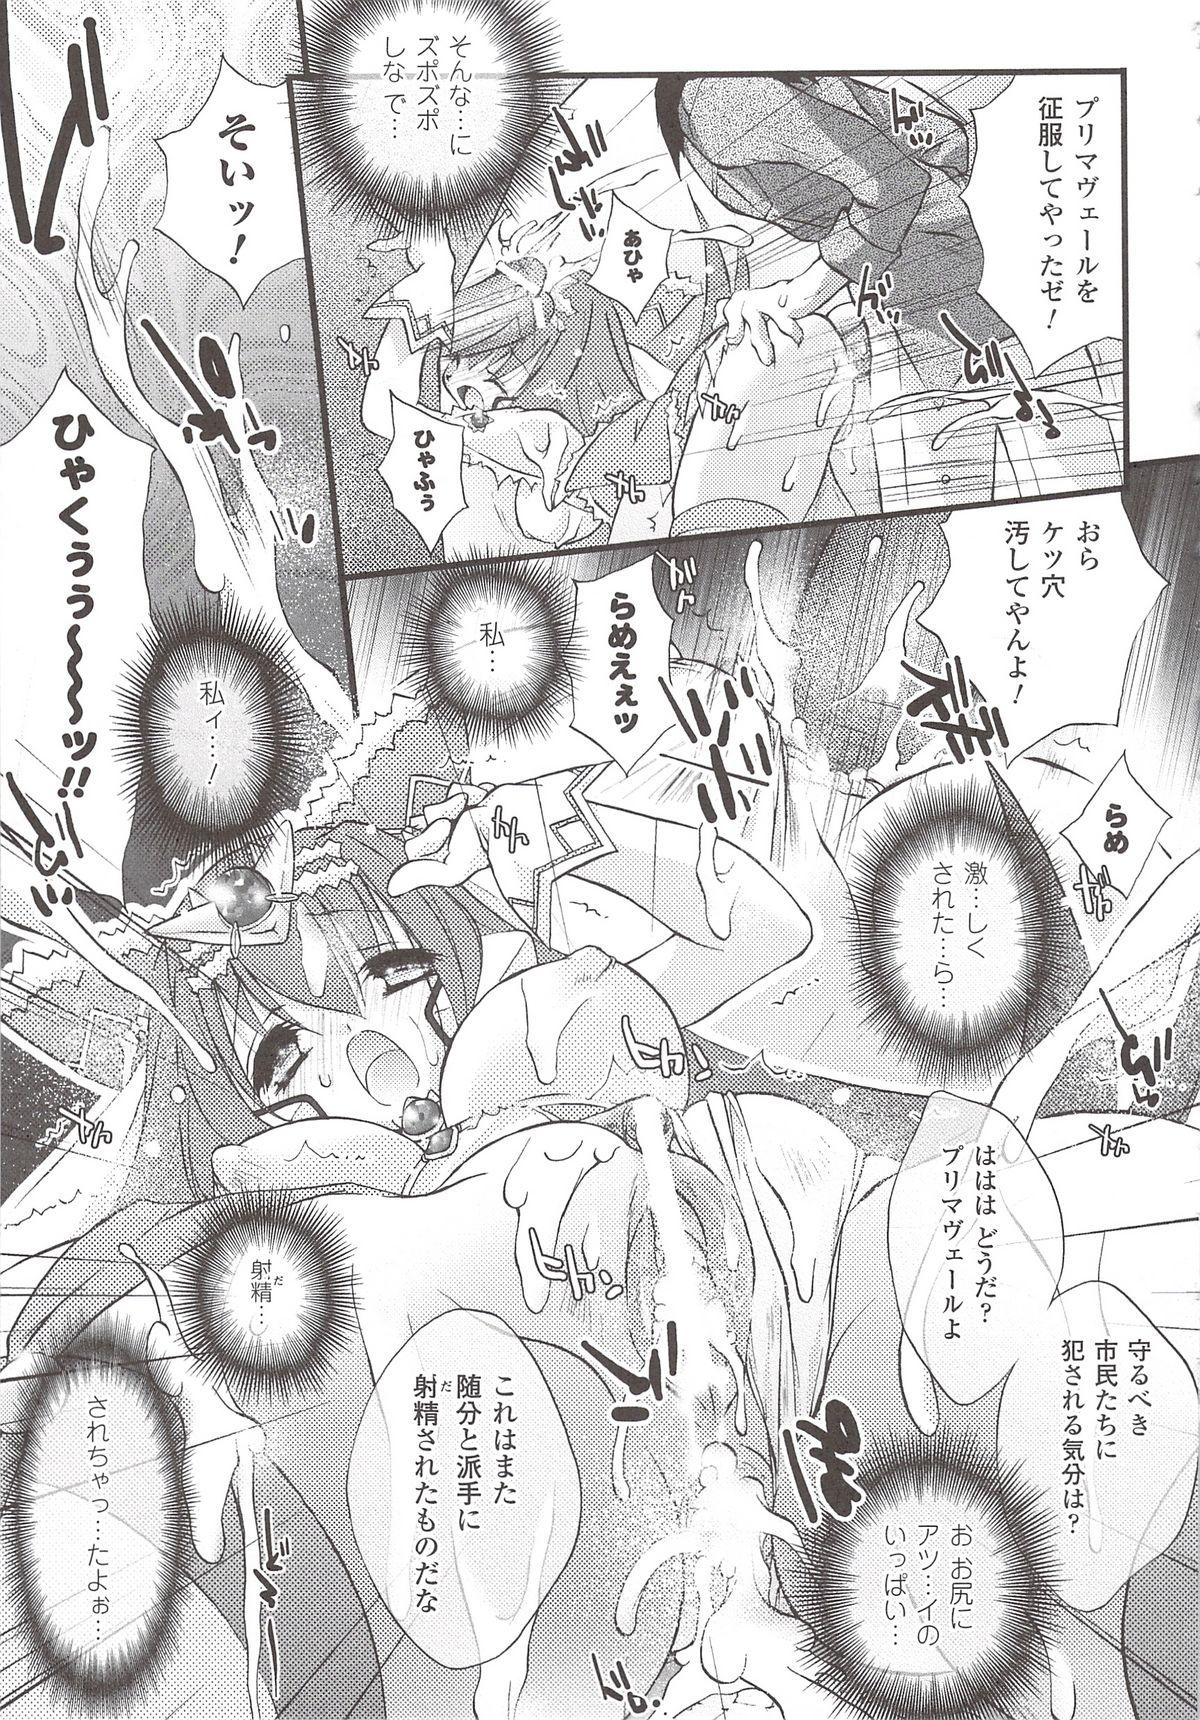 Suisei Tenshi Prima Veil Zwei Anthology Comic 53